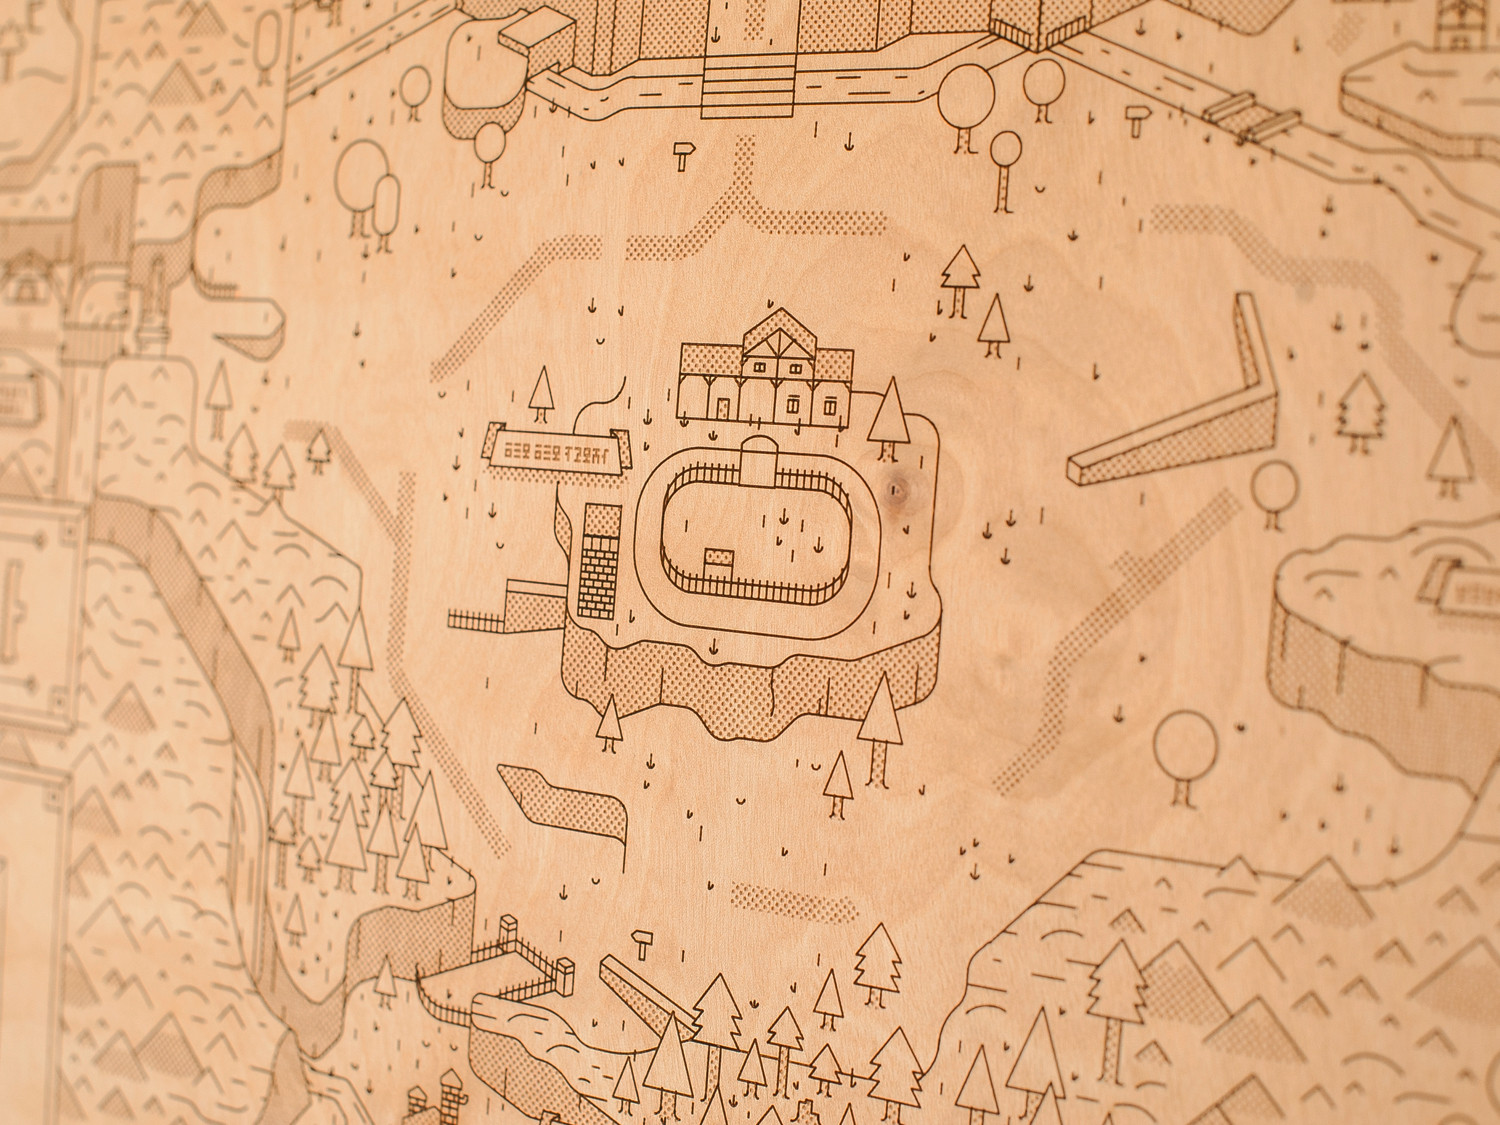 Mapa de Hyrule de Ocarina of Time tallado en madera